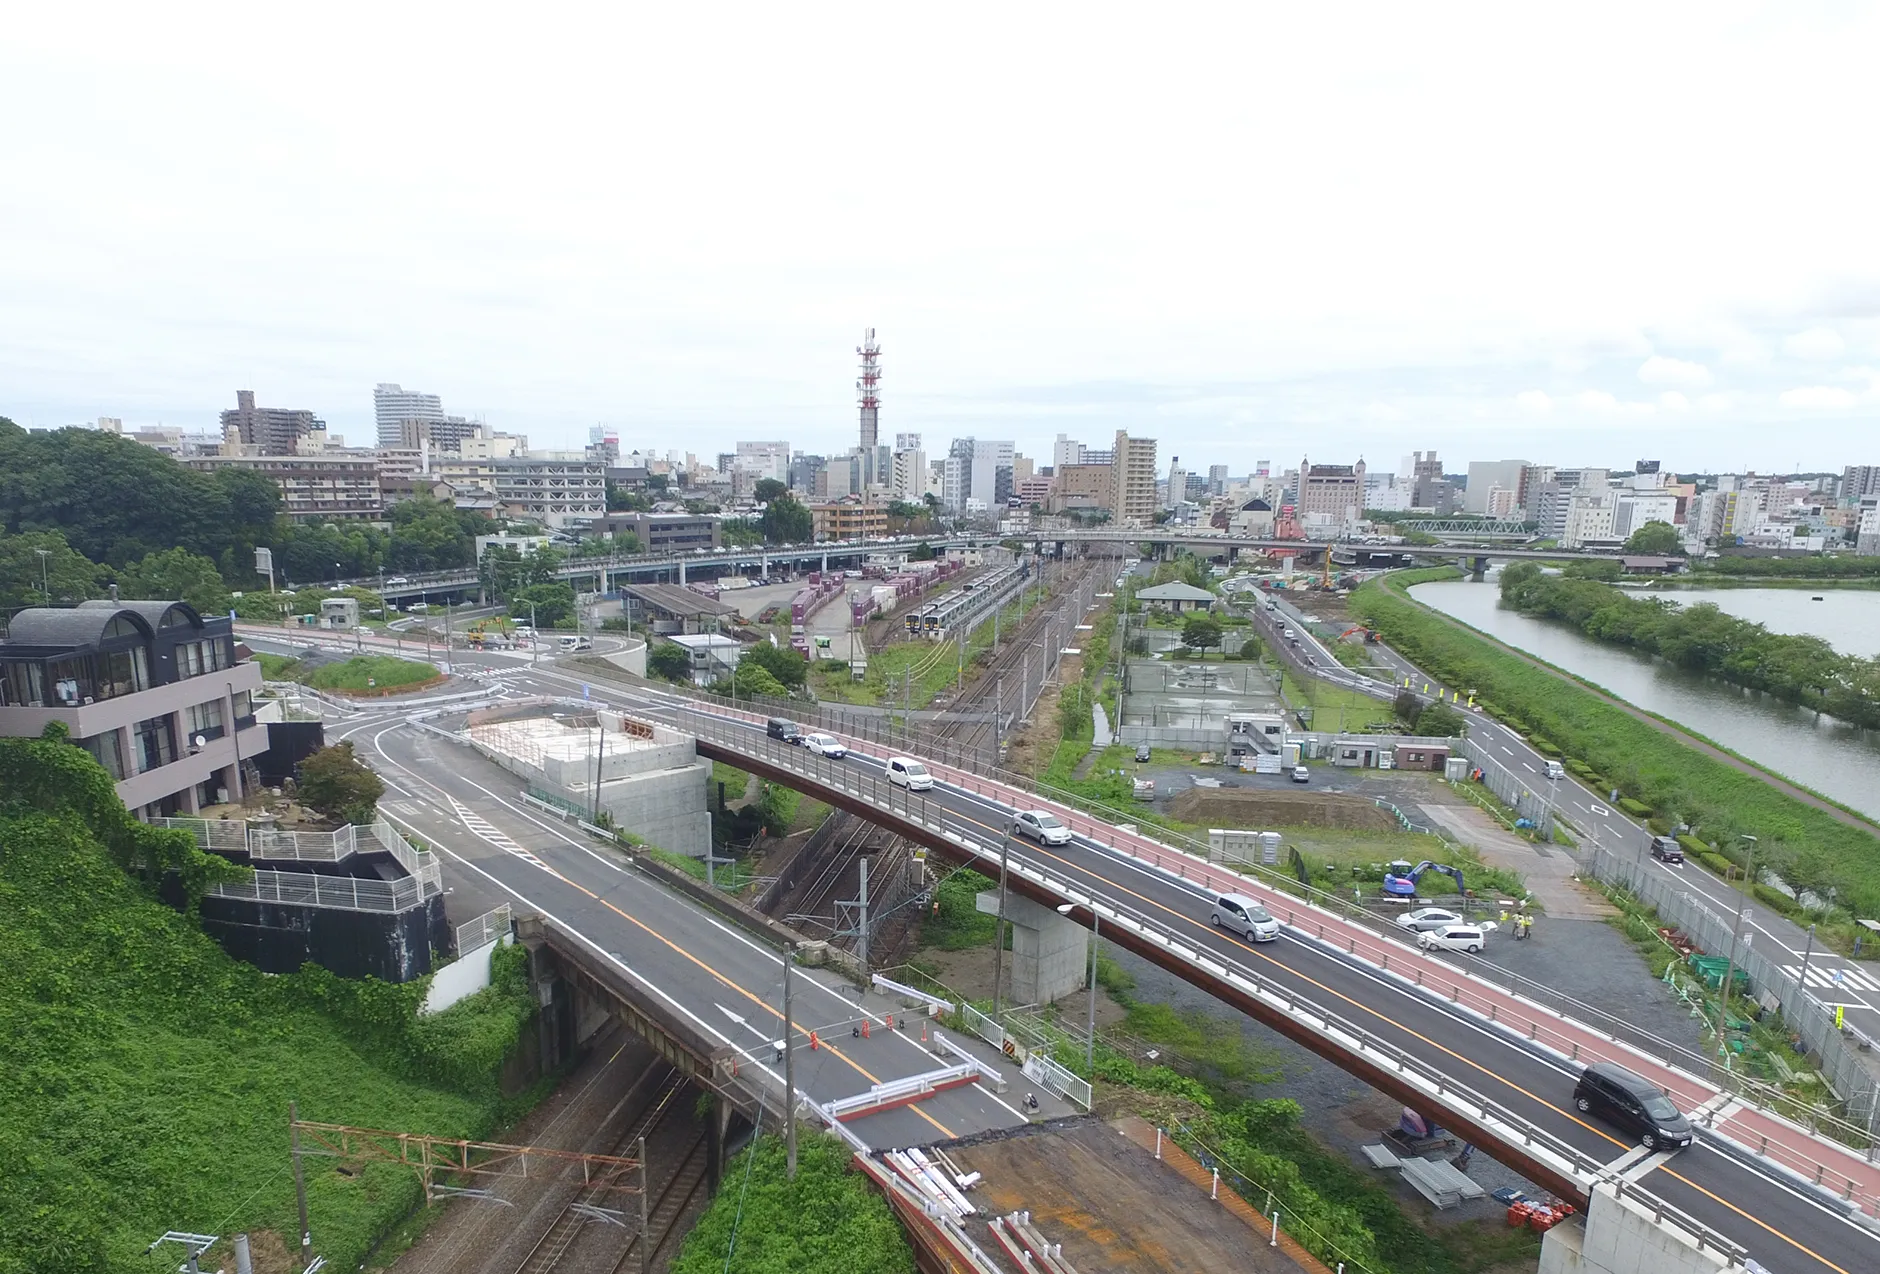 JR常磐線 赤塚・水戸間梅戸橋こ線道路橋架替工事のサムネイル画像です